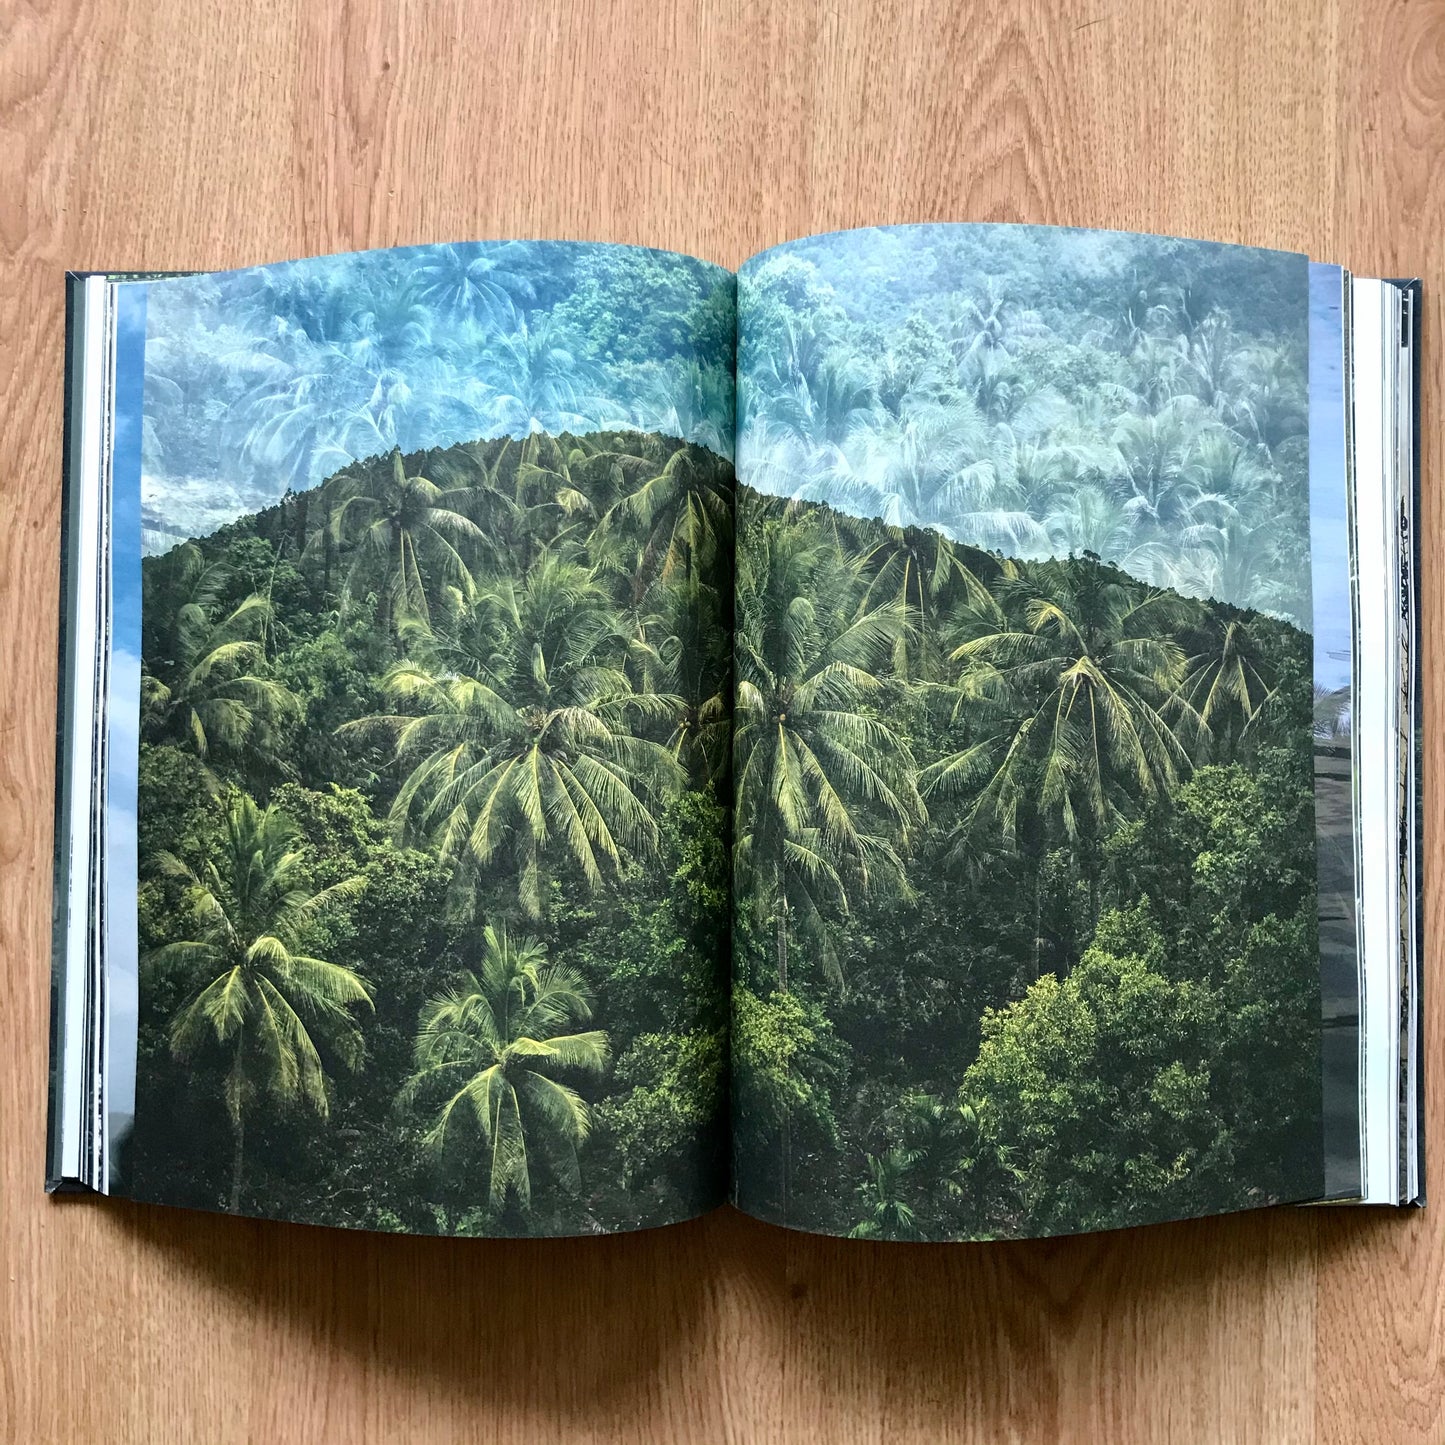 Livro "Living Nature" - Paula Guimarães